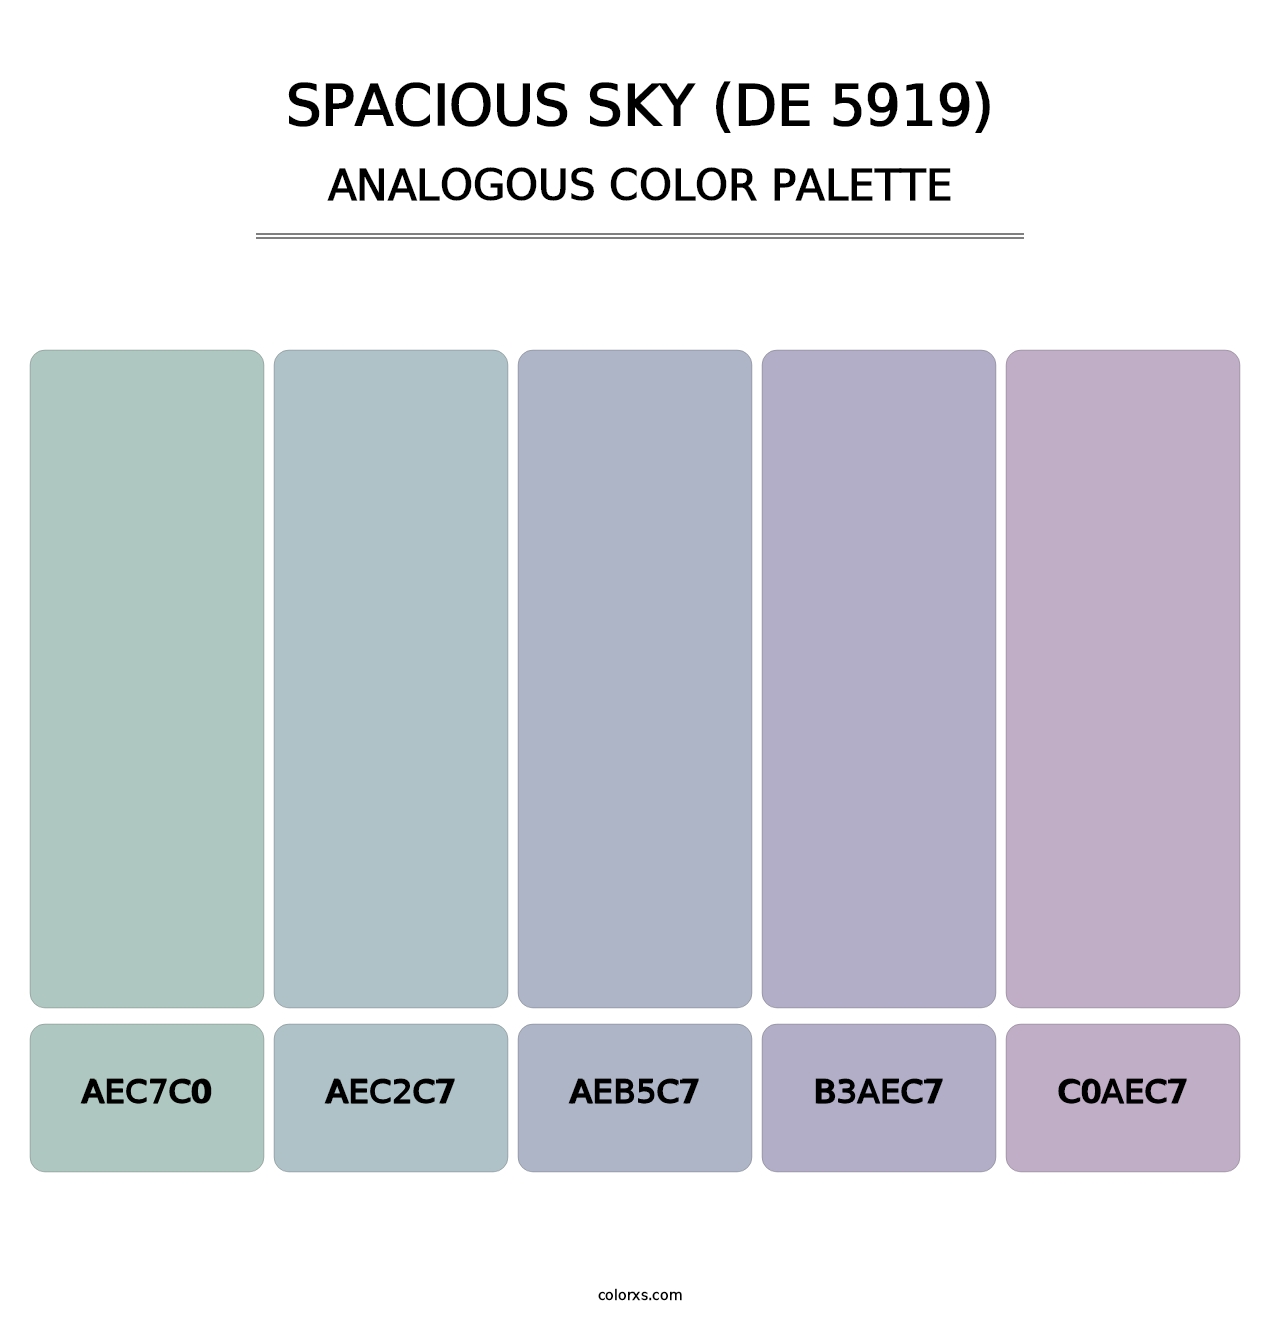 Spacious Sky (DE 5919) - Analogous Color Palette